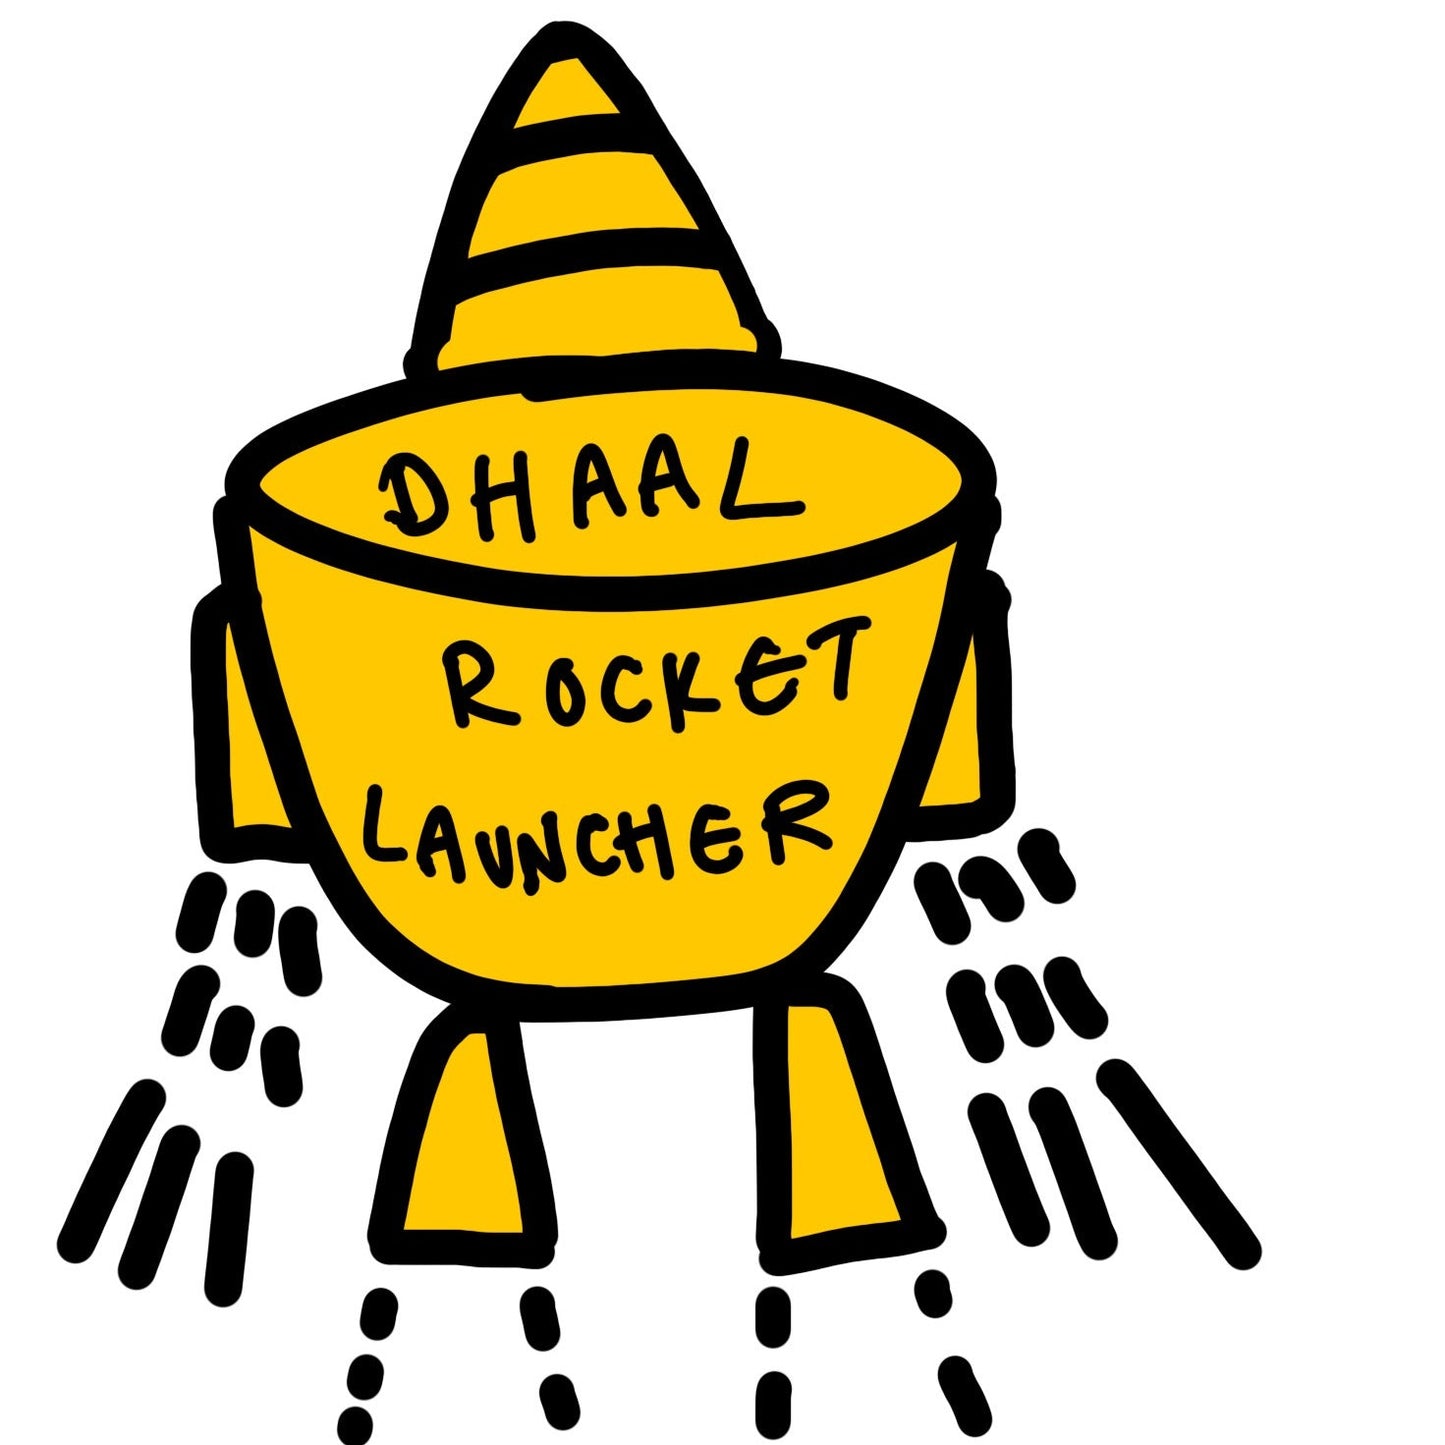 Dhaal Rocket Launcher Art Print